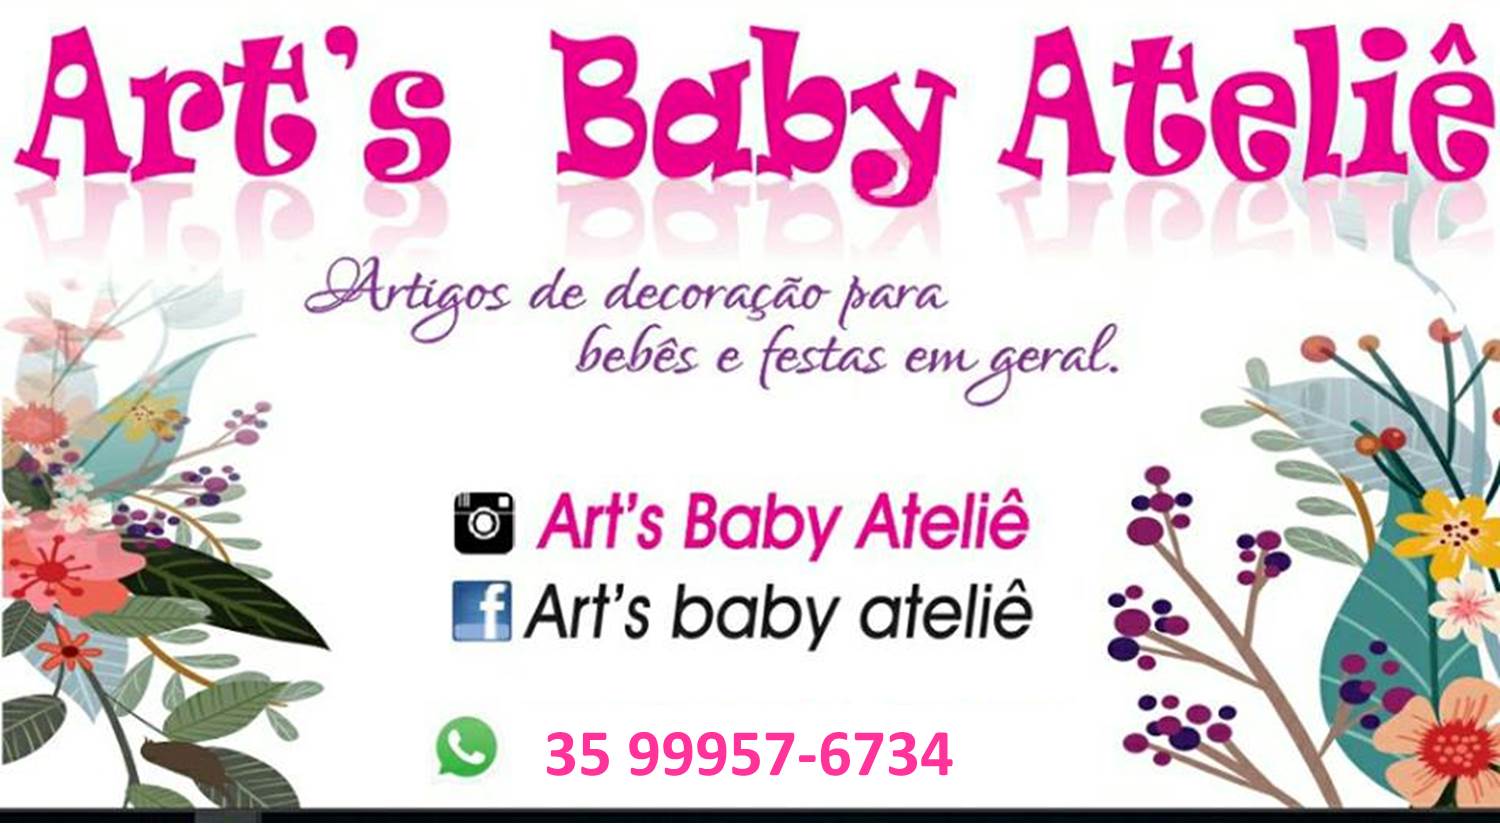 Art's Baby Ateliê